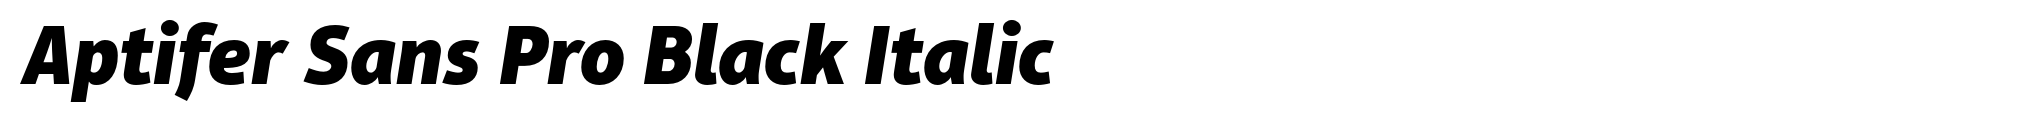 Aptifer Sans Pro Black Italic image